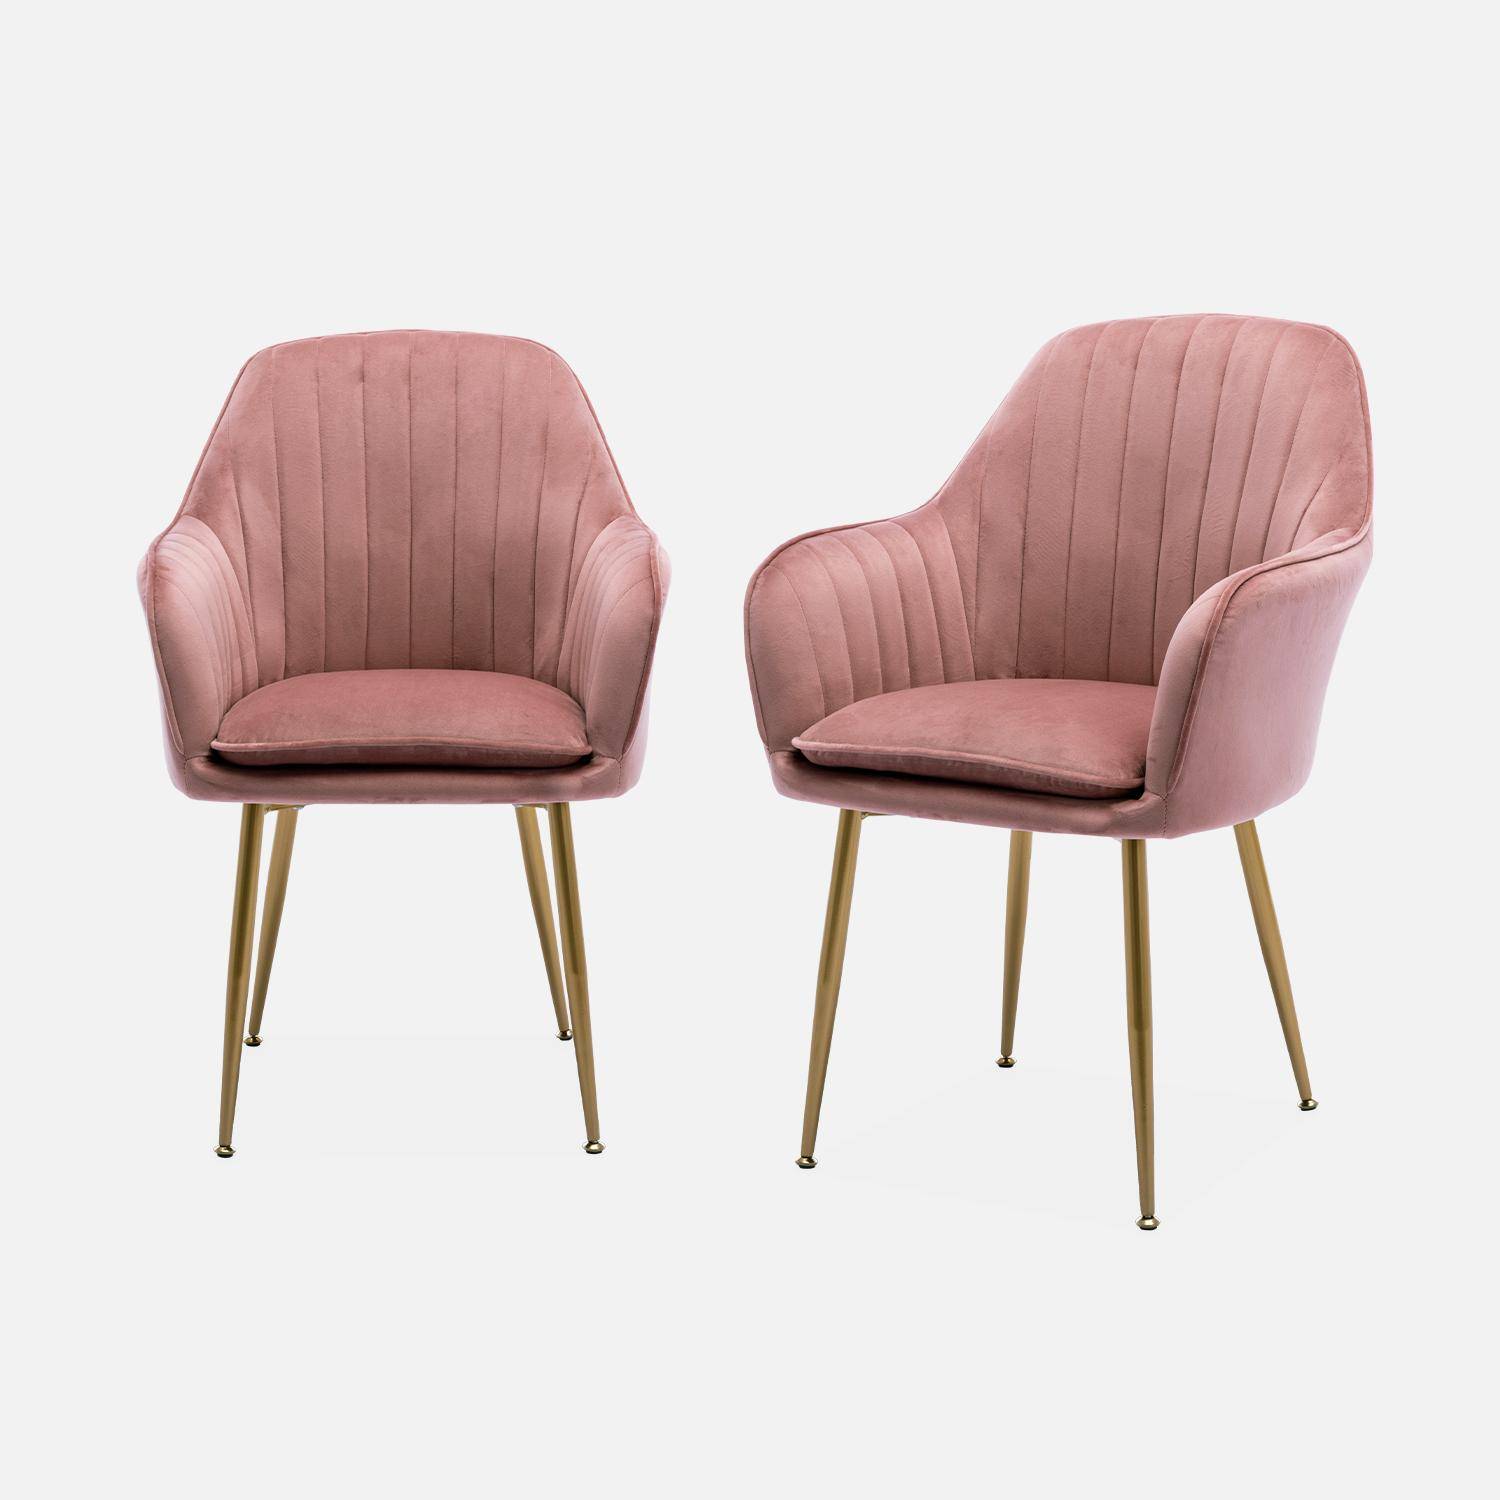 Lote de 2 sillones de terciopelo rosa con patas de metal dorado Photo2